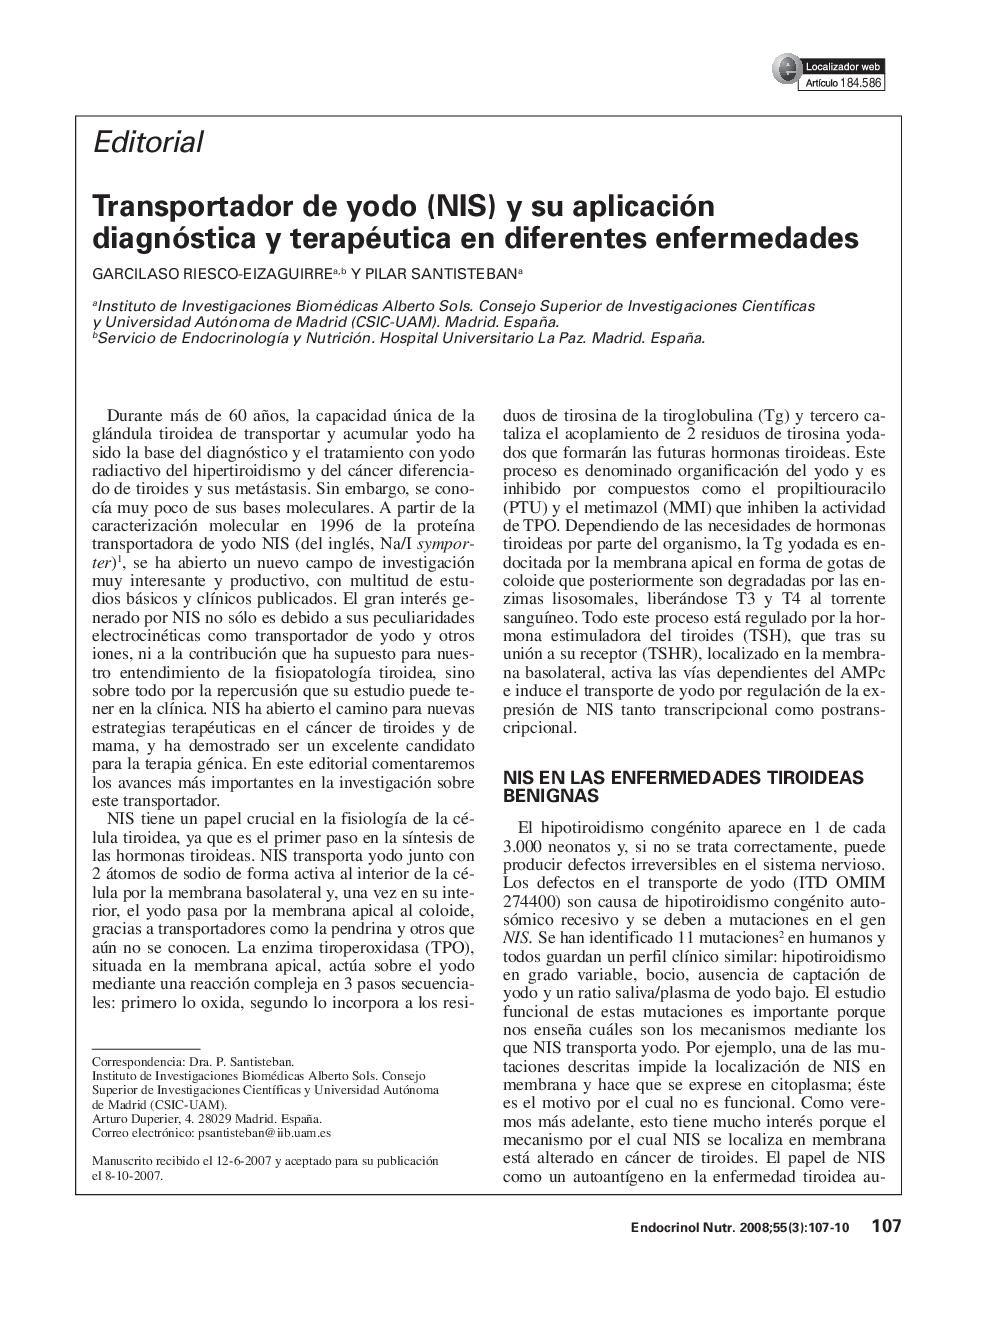 Transportador de yodo (NIS) y su aplicación diagnóstica y terapéutica en diferentes enfermedades